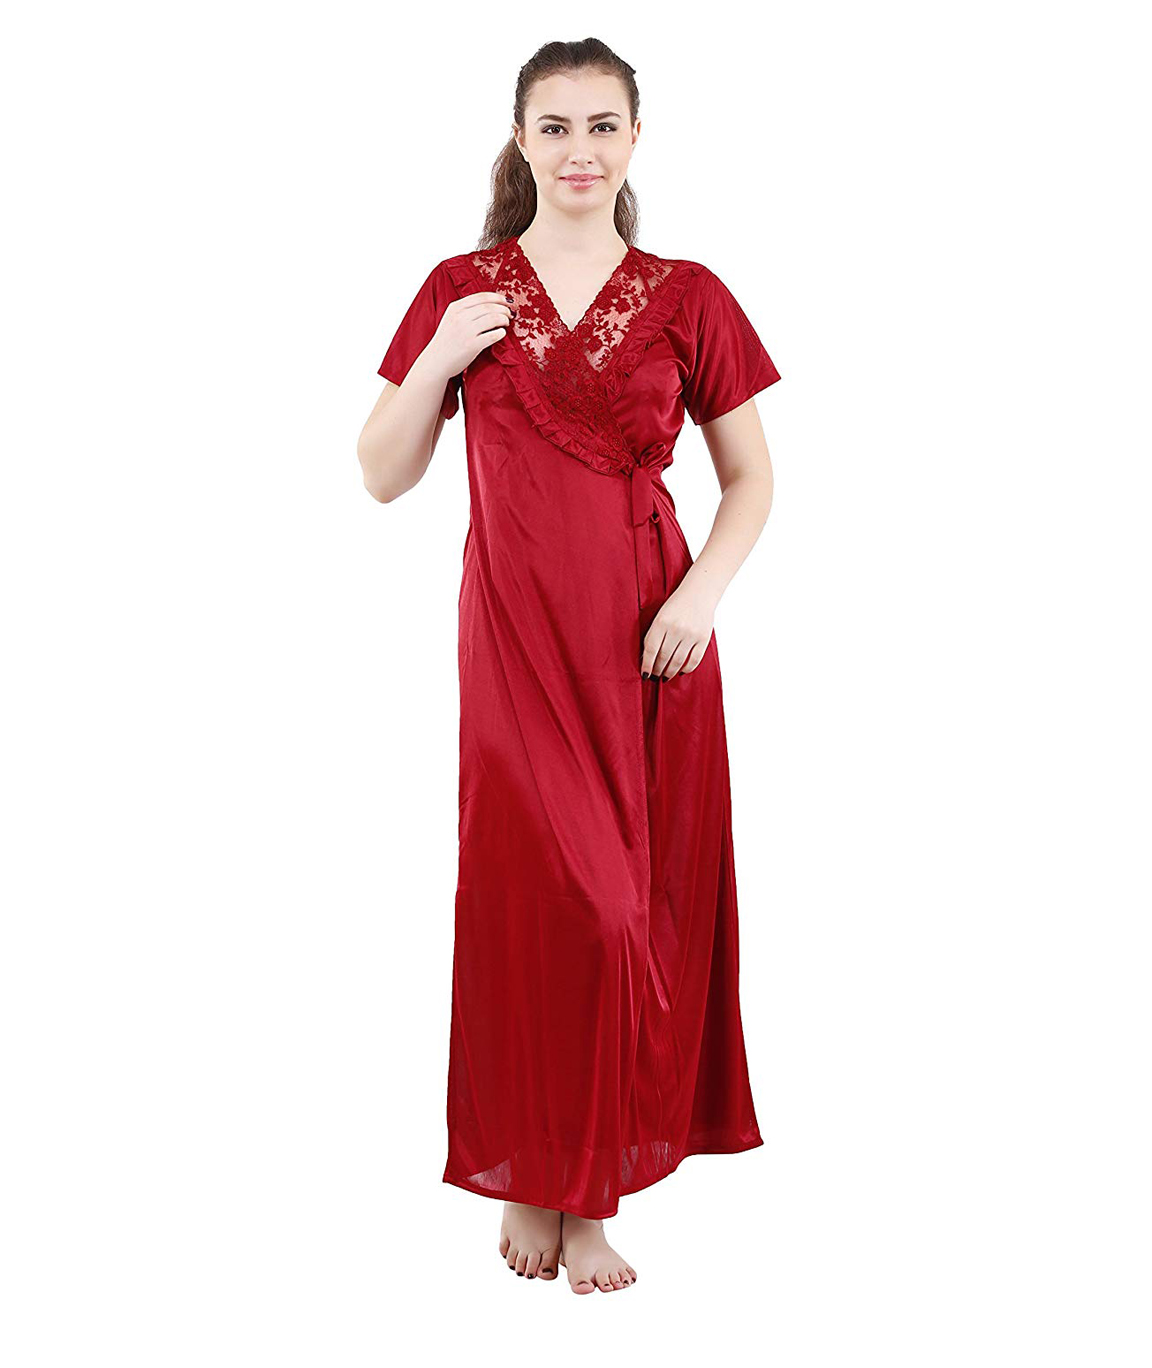 Romaisa Women`s Satin Lace Work Nightdress with Robe (Size - Free